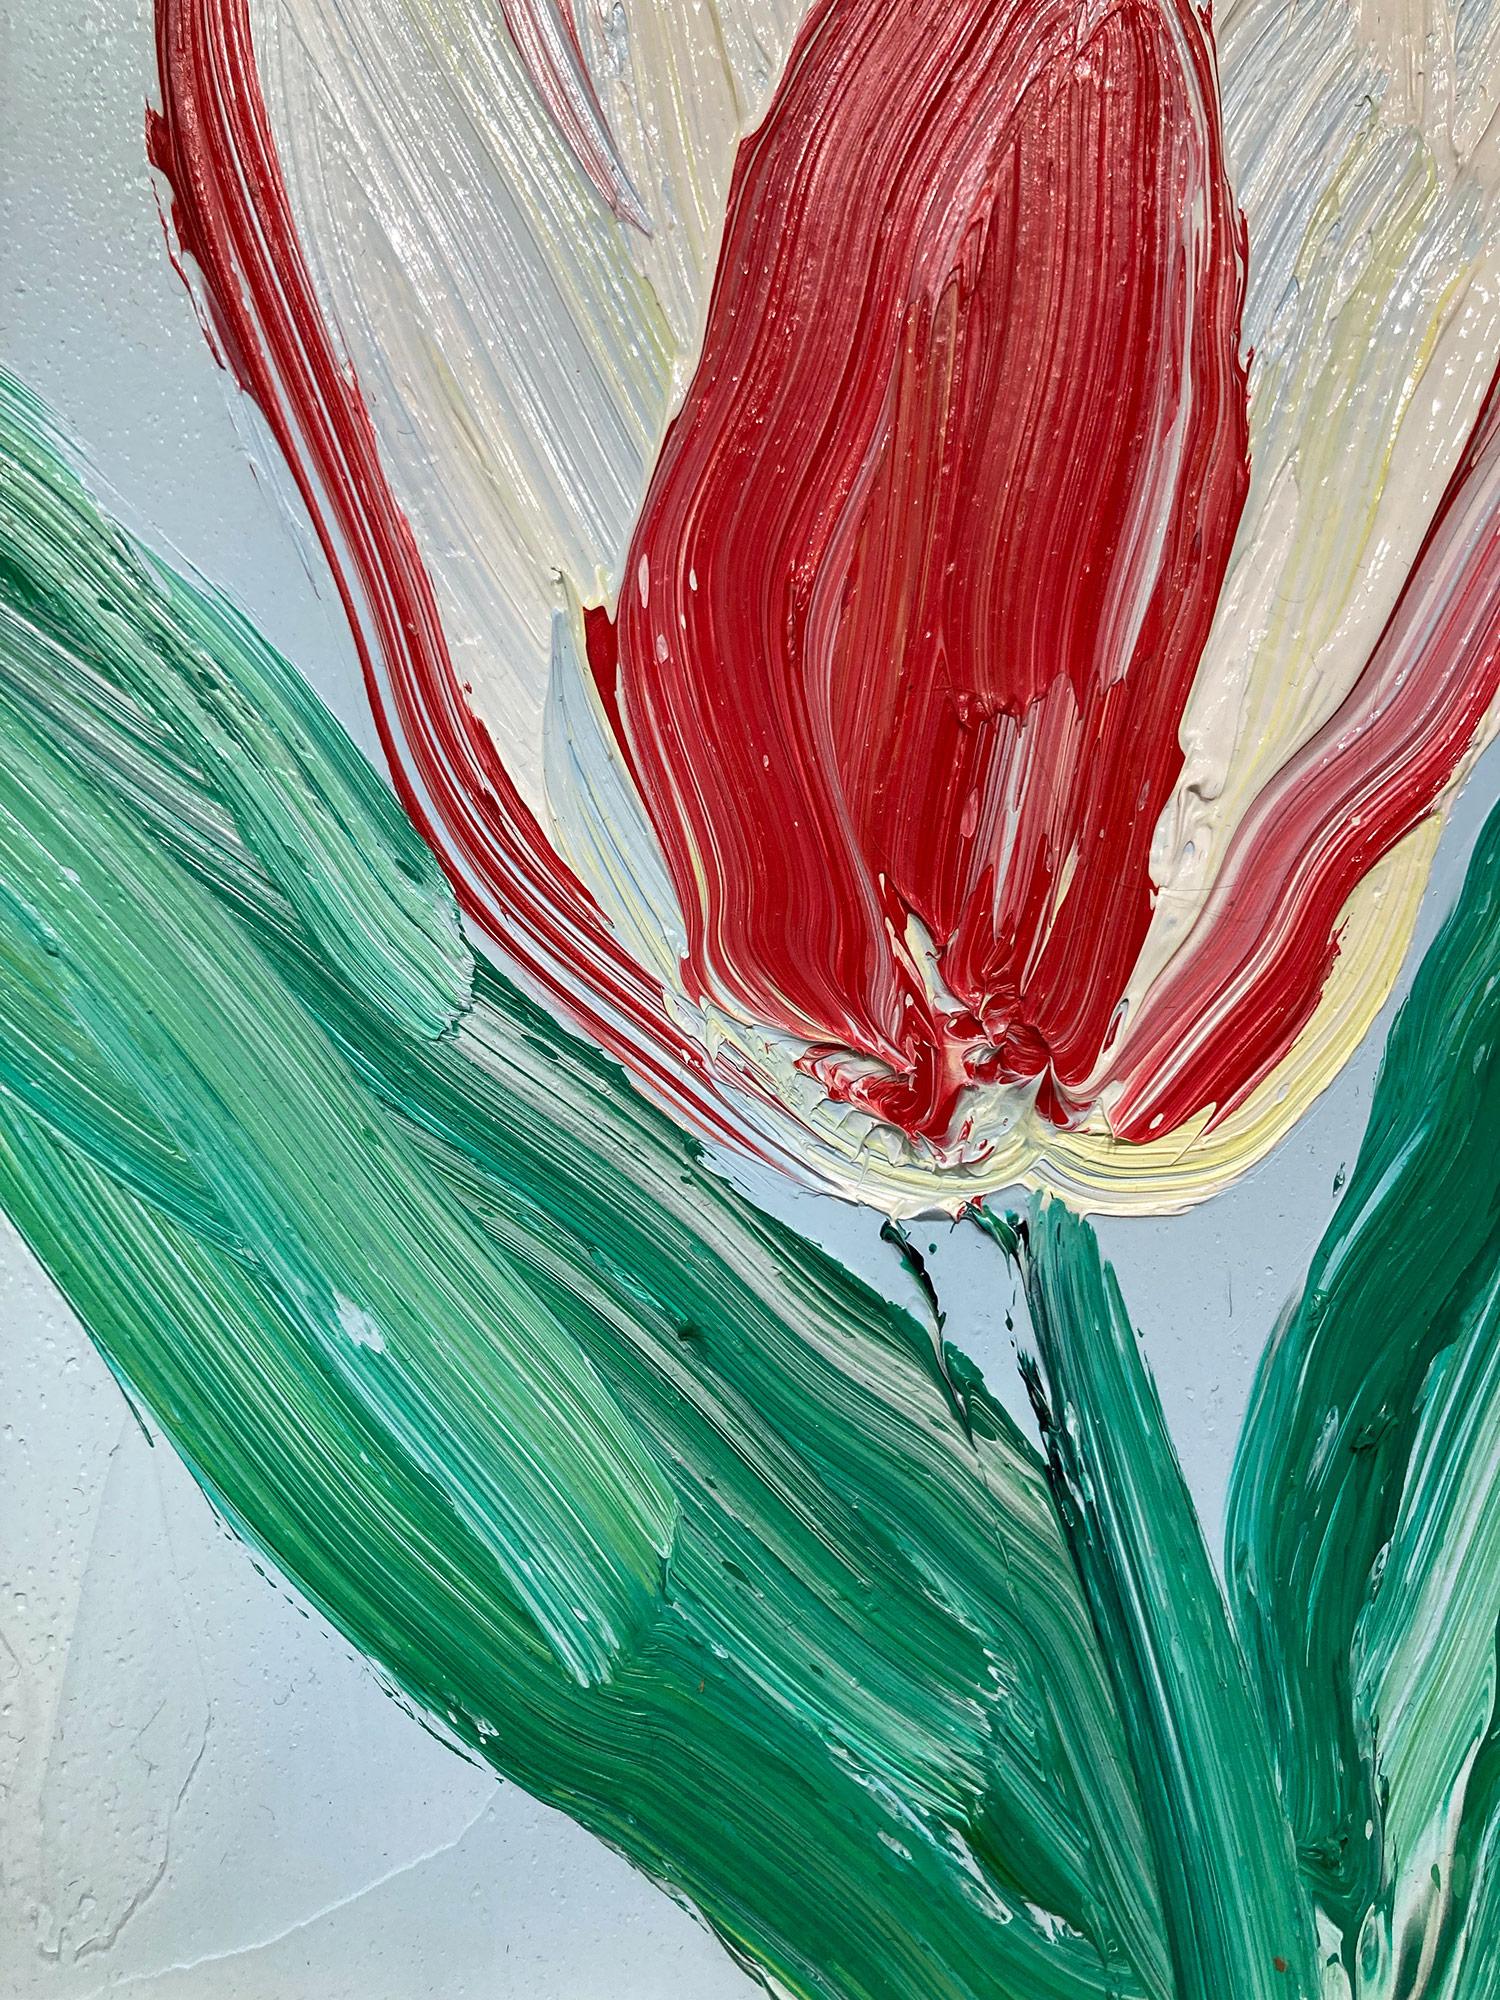 Eine wunderbare Komposition aus einer der neuesten Serien von Slonem, den Tulpen. Dieses Werk zeigt die gestische Figur einer roten und weißen Tulpe auf einem hellblauen Hintergrund mit dickem Farbauftrag. Inspiriert von der Natur und einer echten